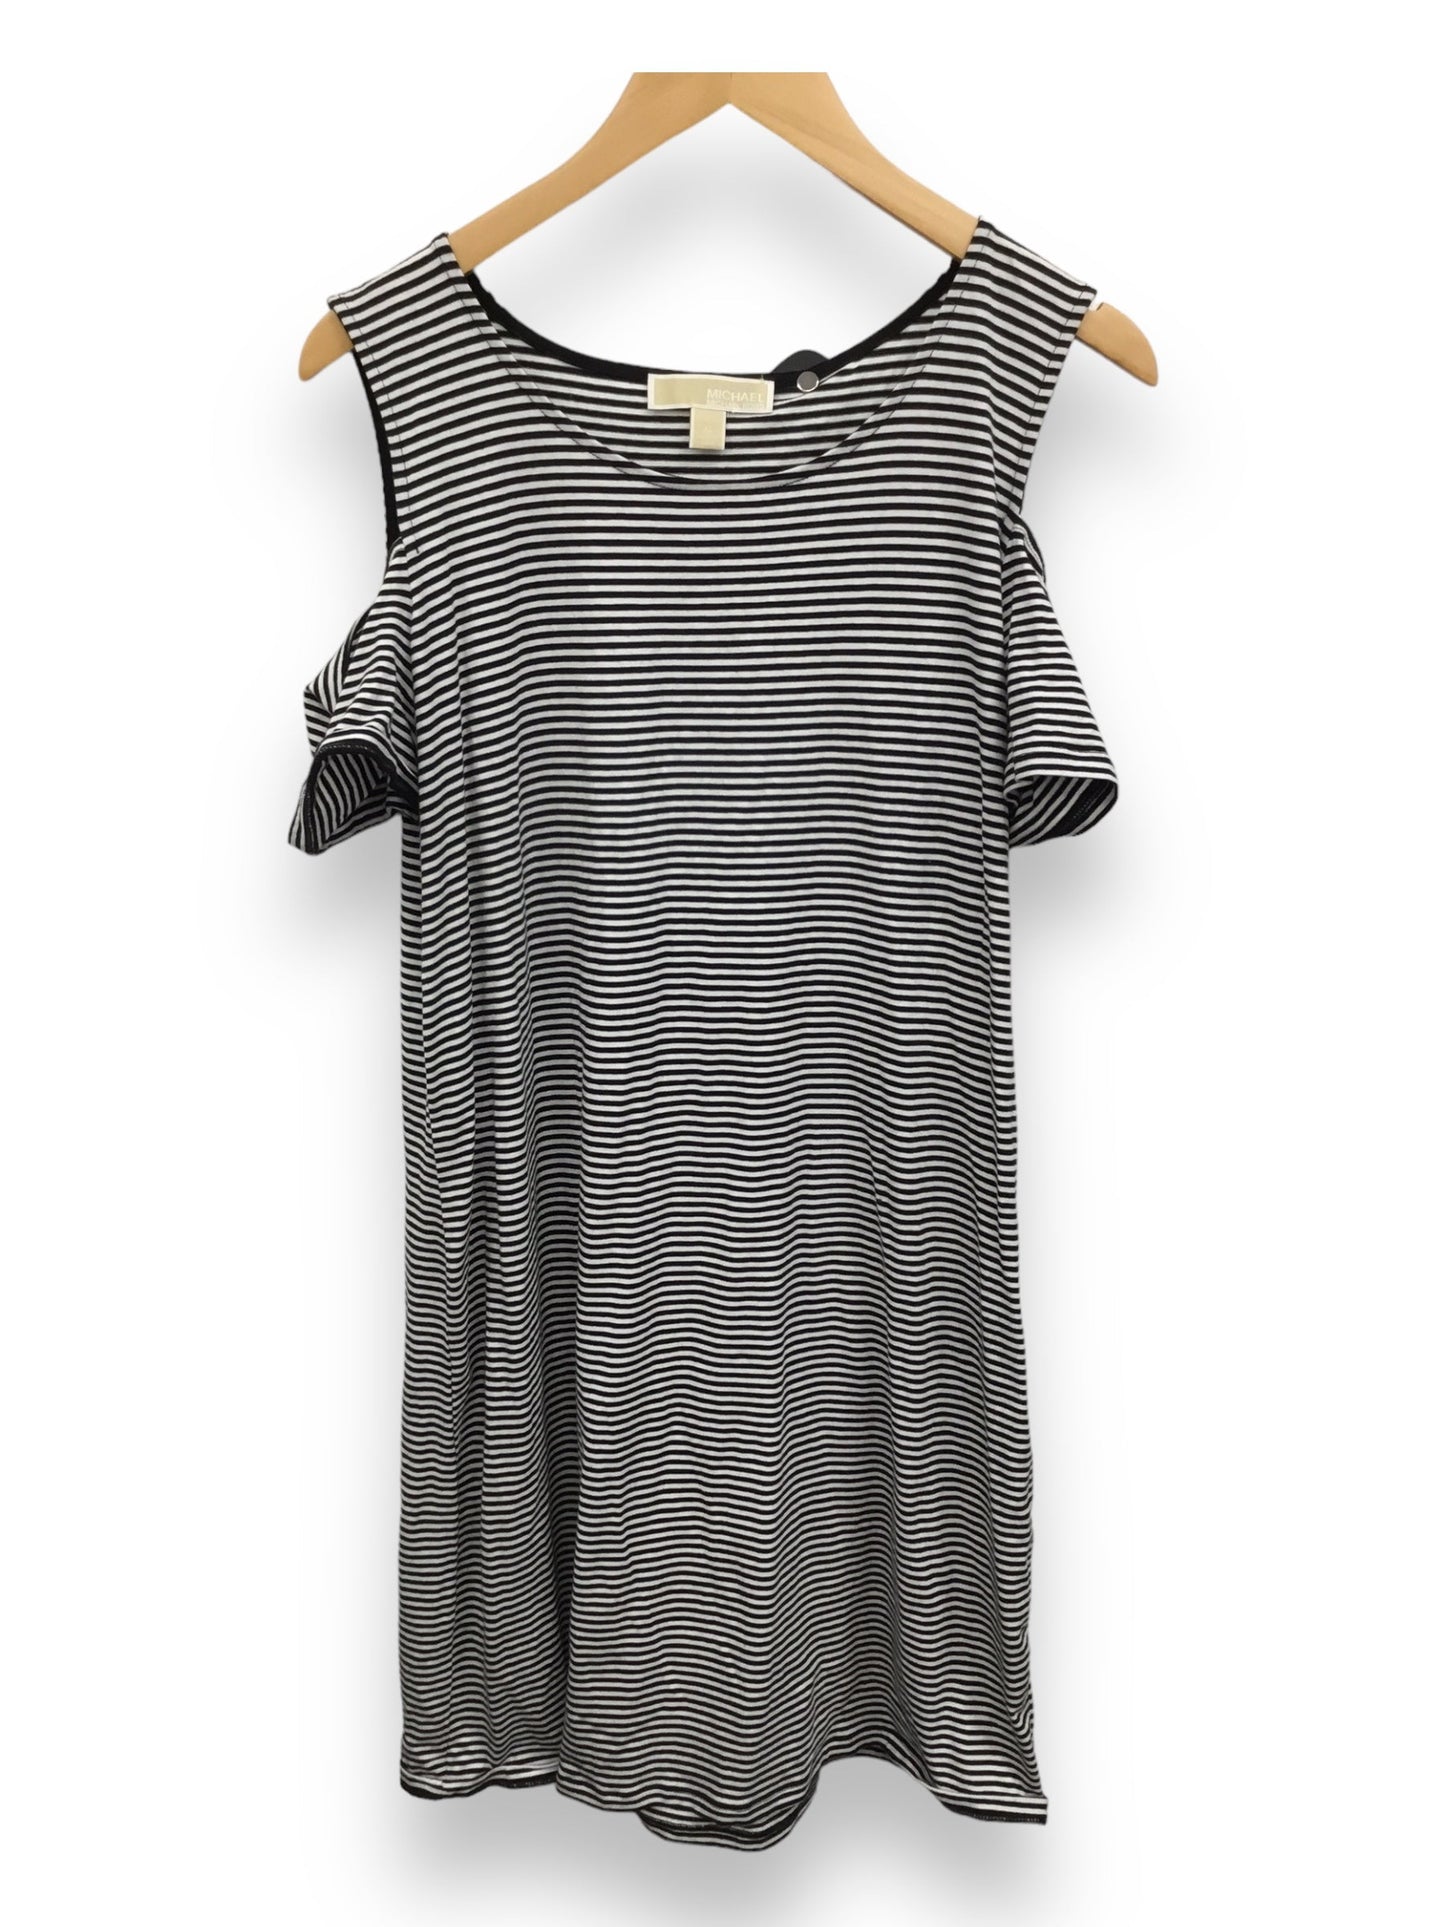 Striped Pattern Dress Designer Michael By Michael Kors, Size Xl